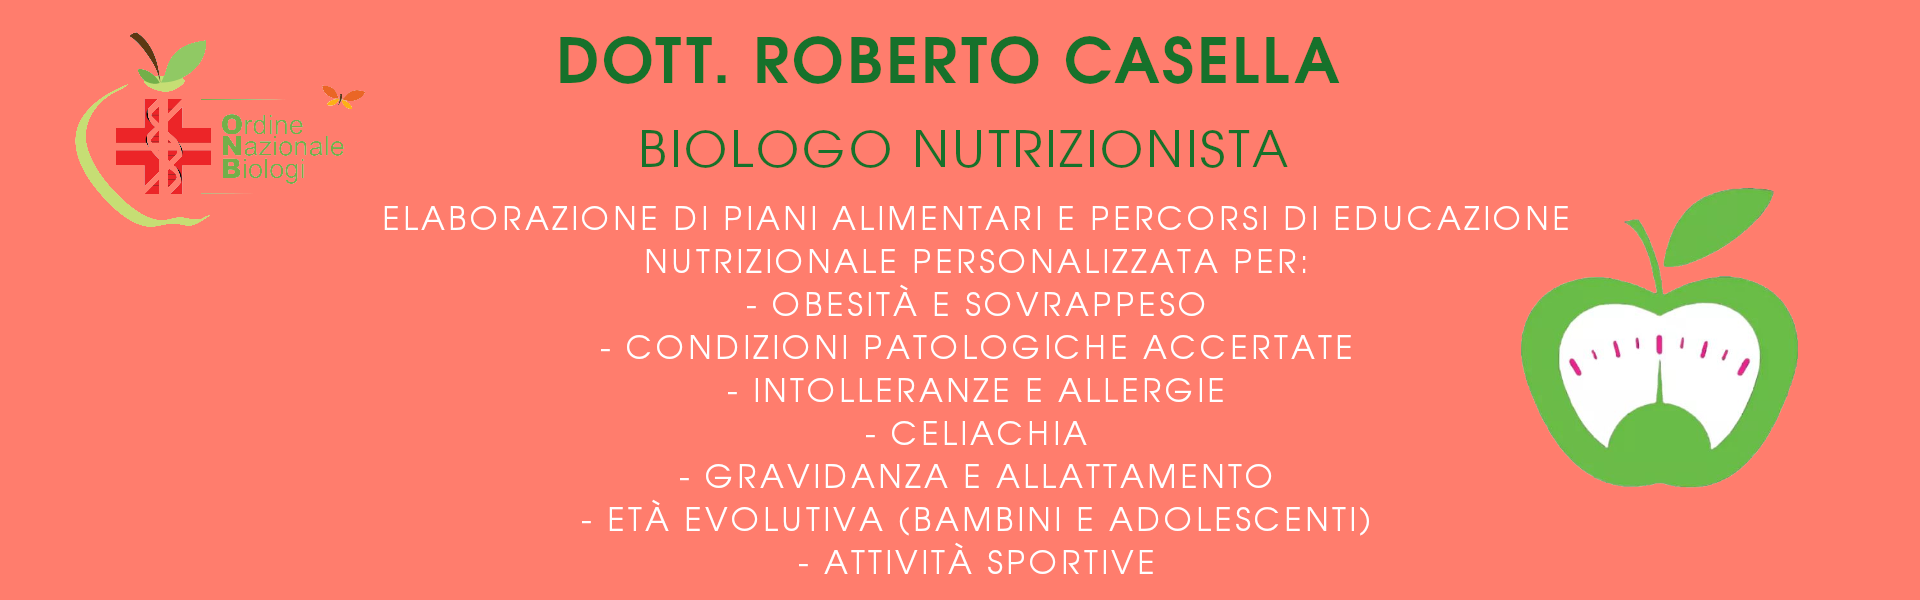 DOTT.ROBERTO CASELLA